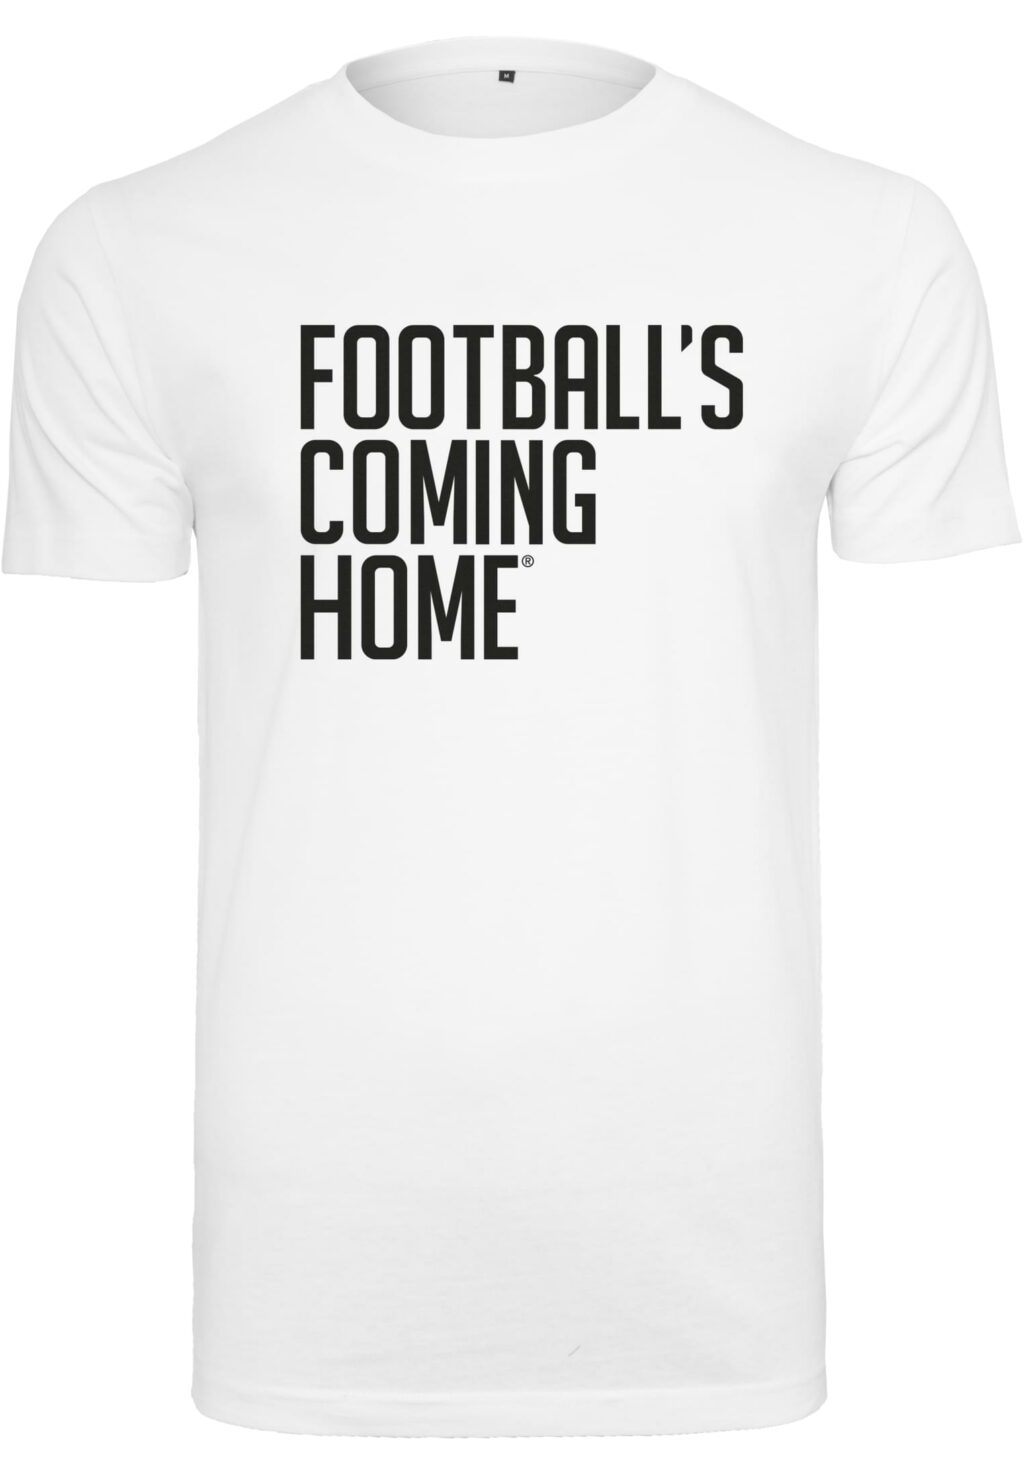 Footballs Coming Home Logo Tee white MC874